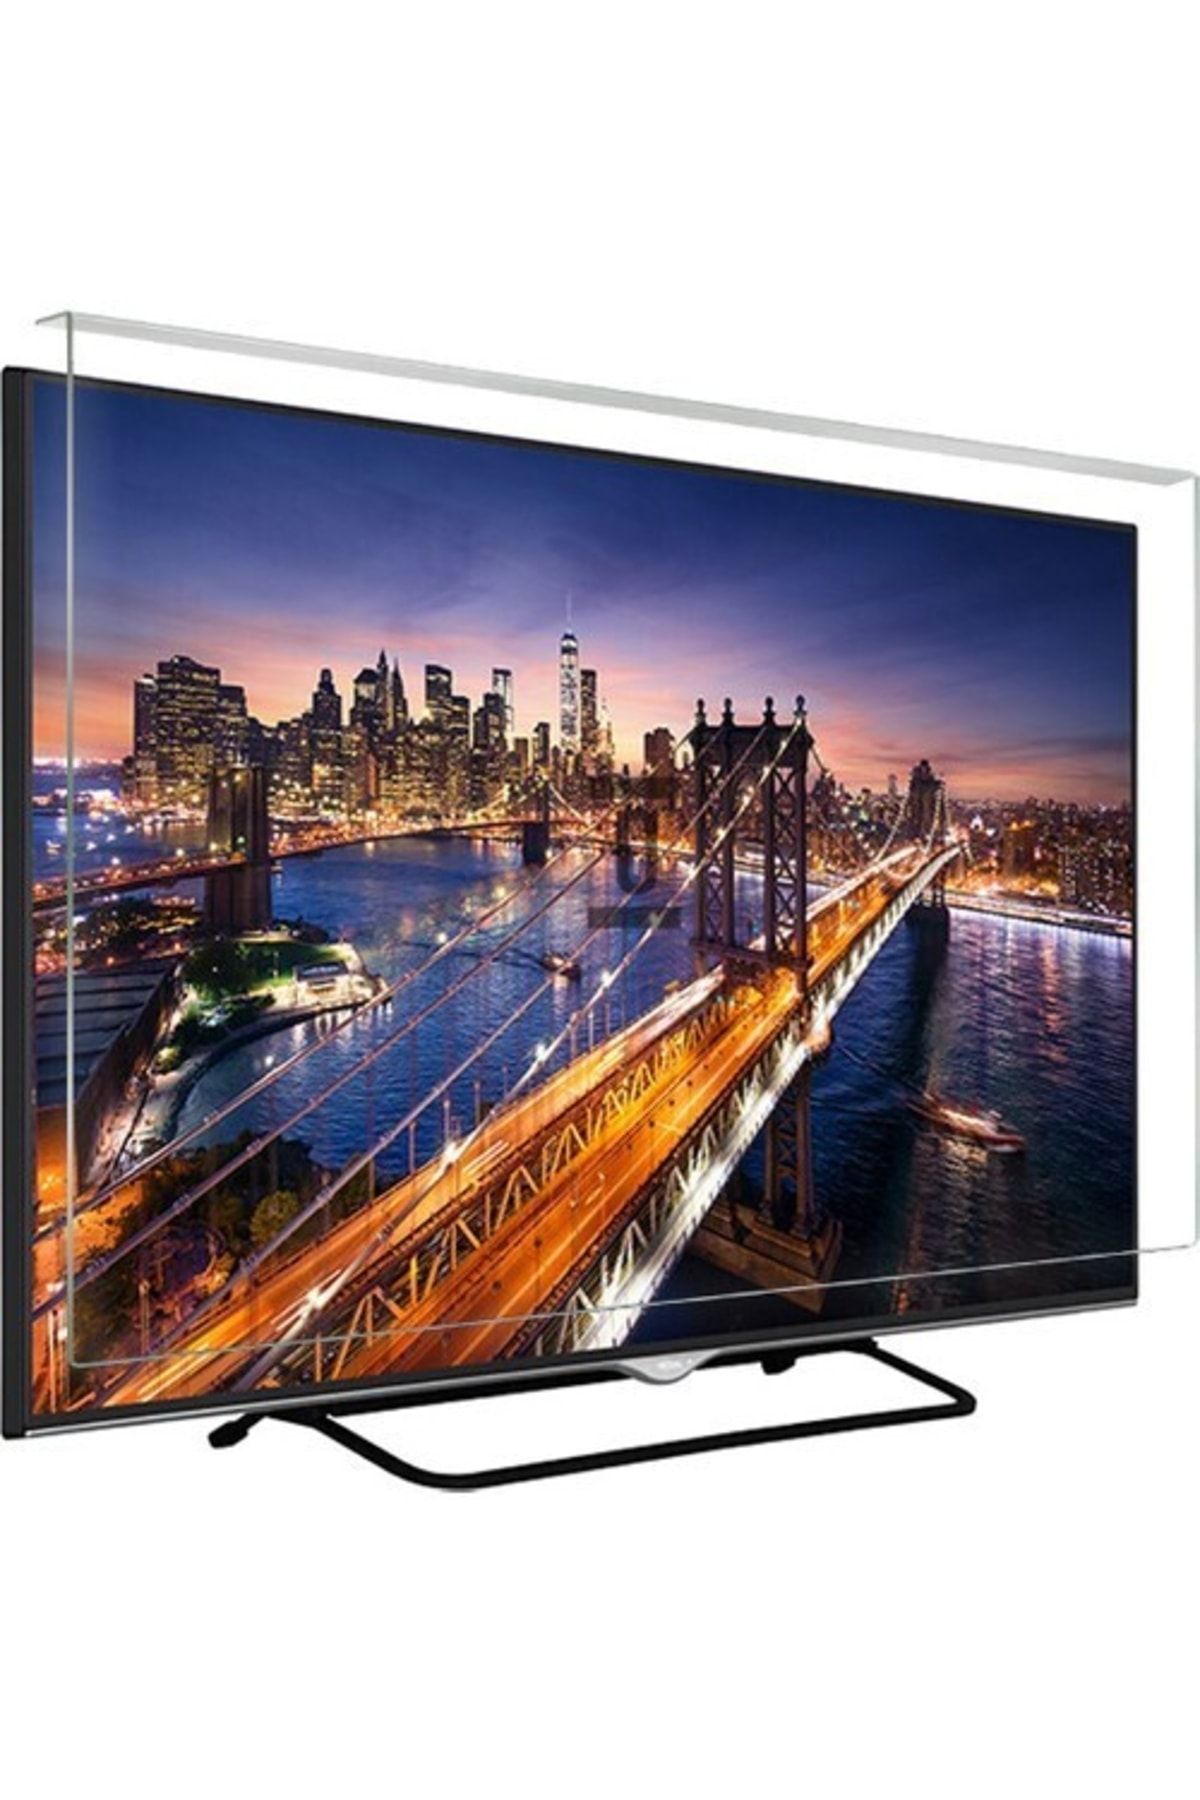 Telenova Asaf Online-evçelik 50s8001 Tv Ekran Koruyucu Düz (flat) Ekran